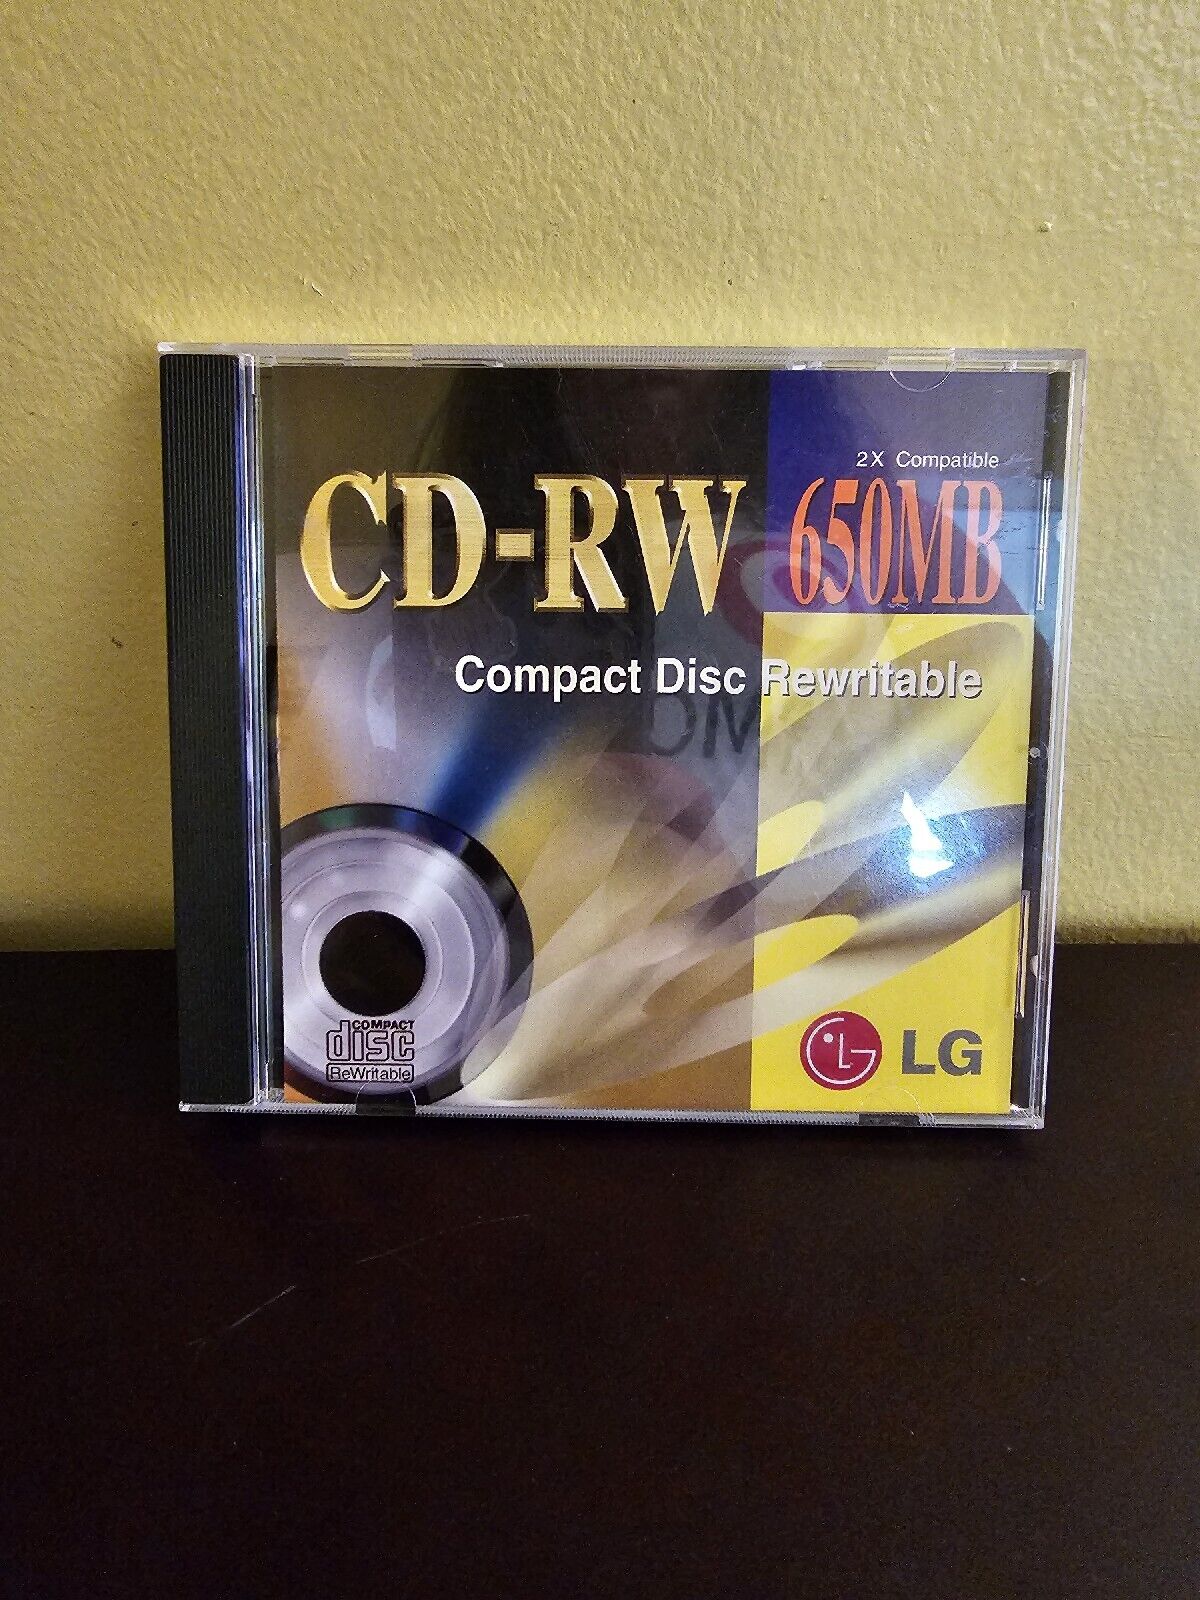 LG CD-RW 650MB Compact Disc Rewritable